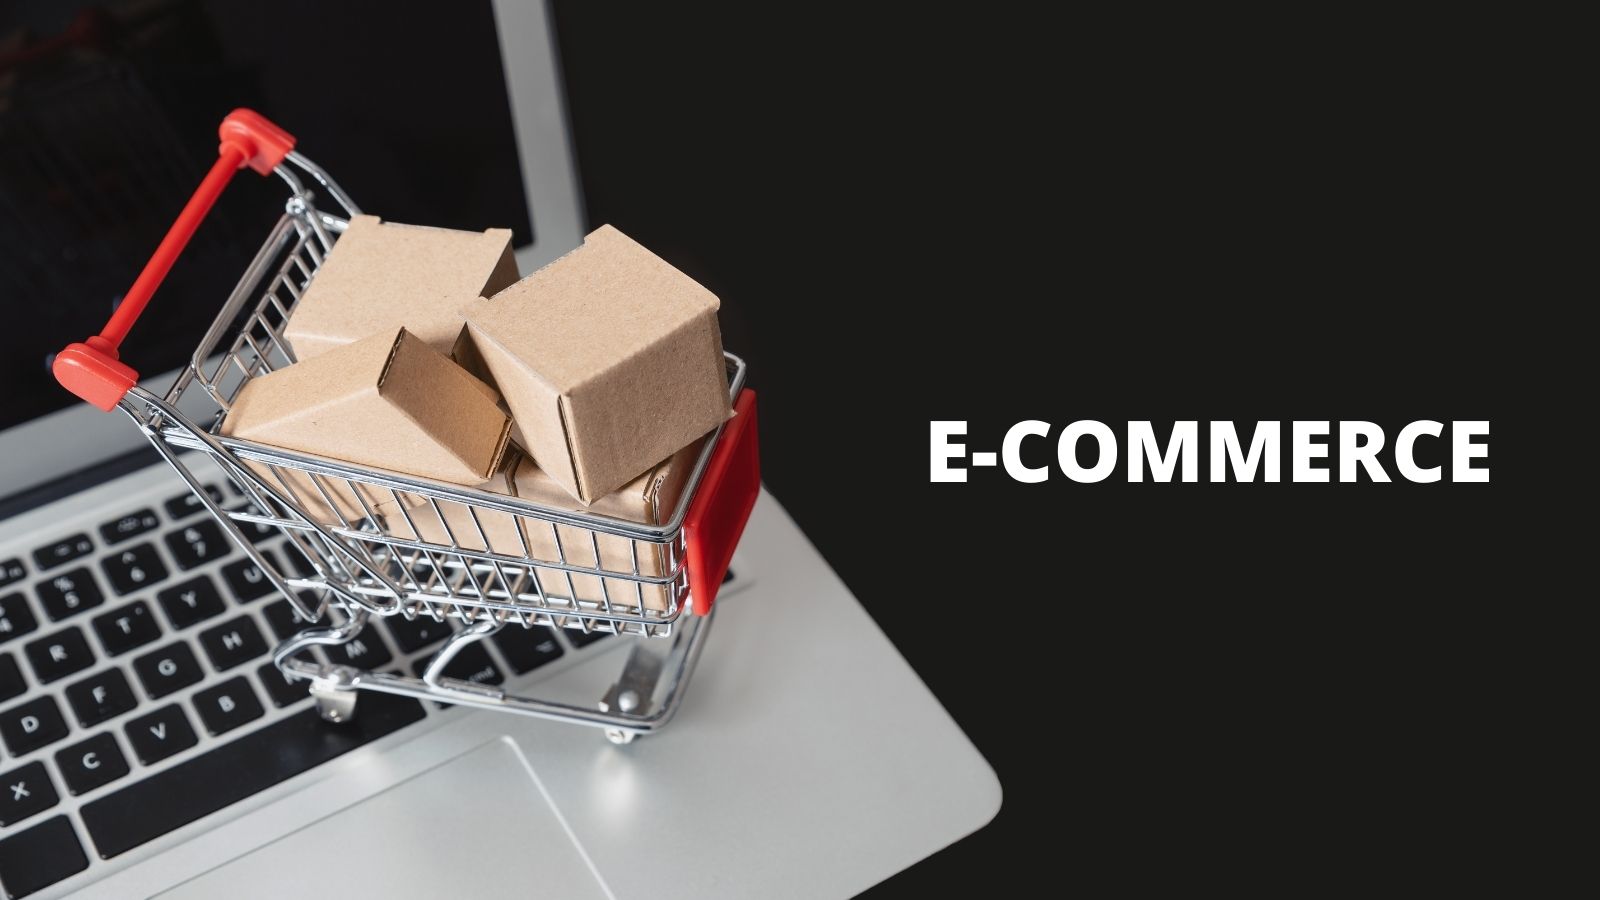 E-COMMERCE najważniejszym wyzwaniem w najbliższych latach Digital mediarun e commerce obraz